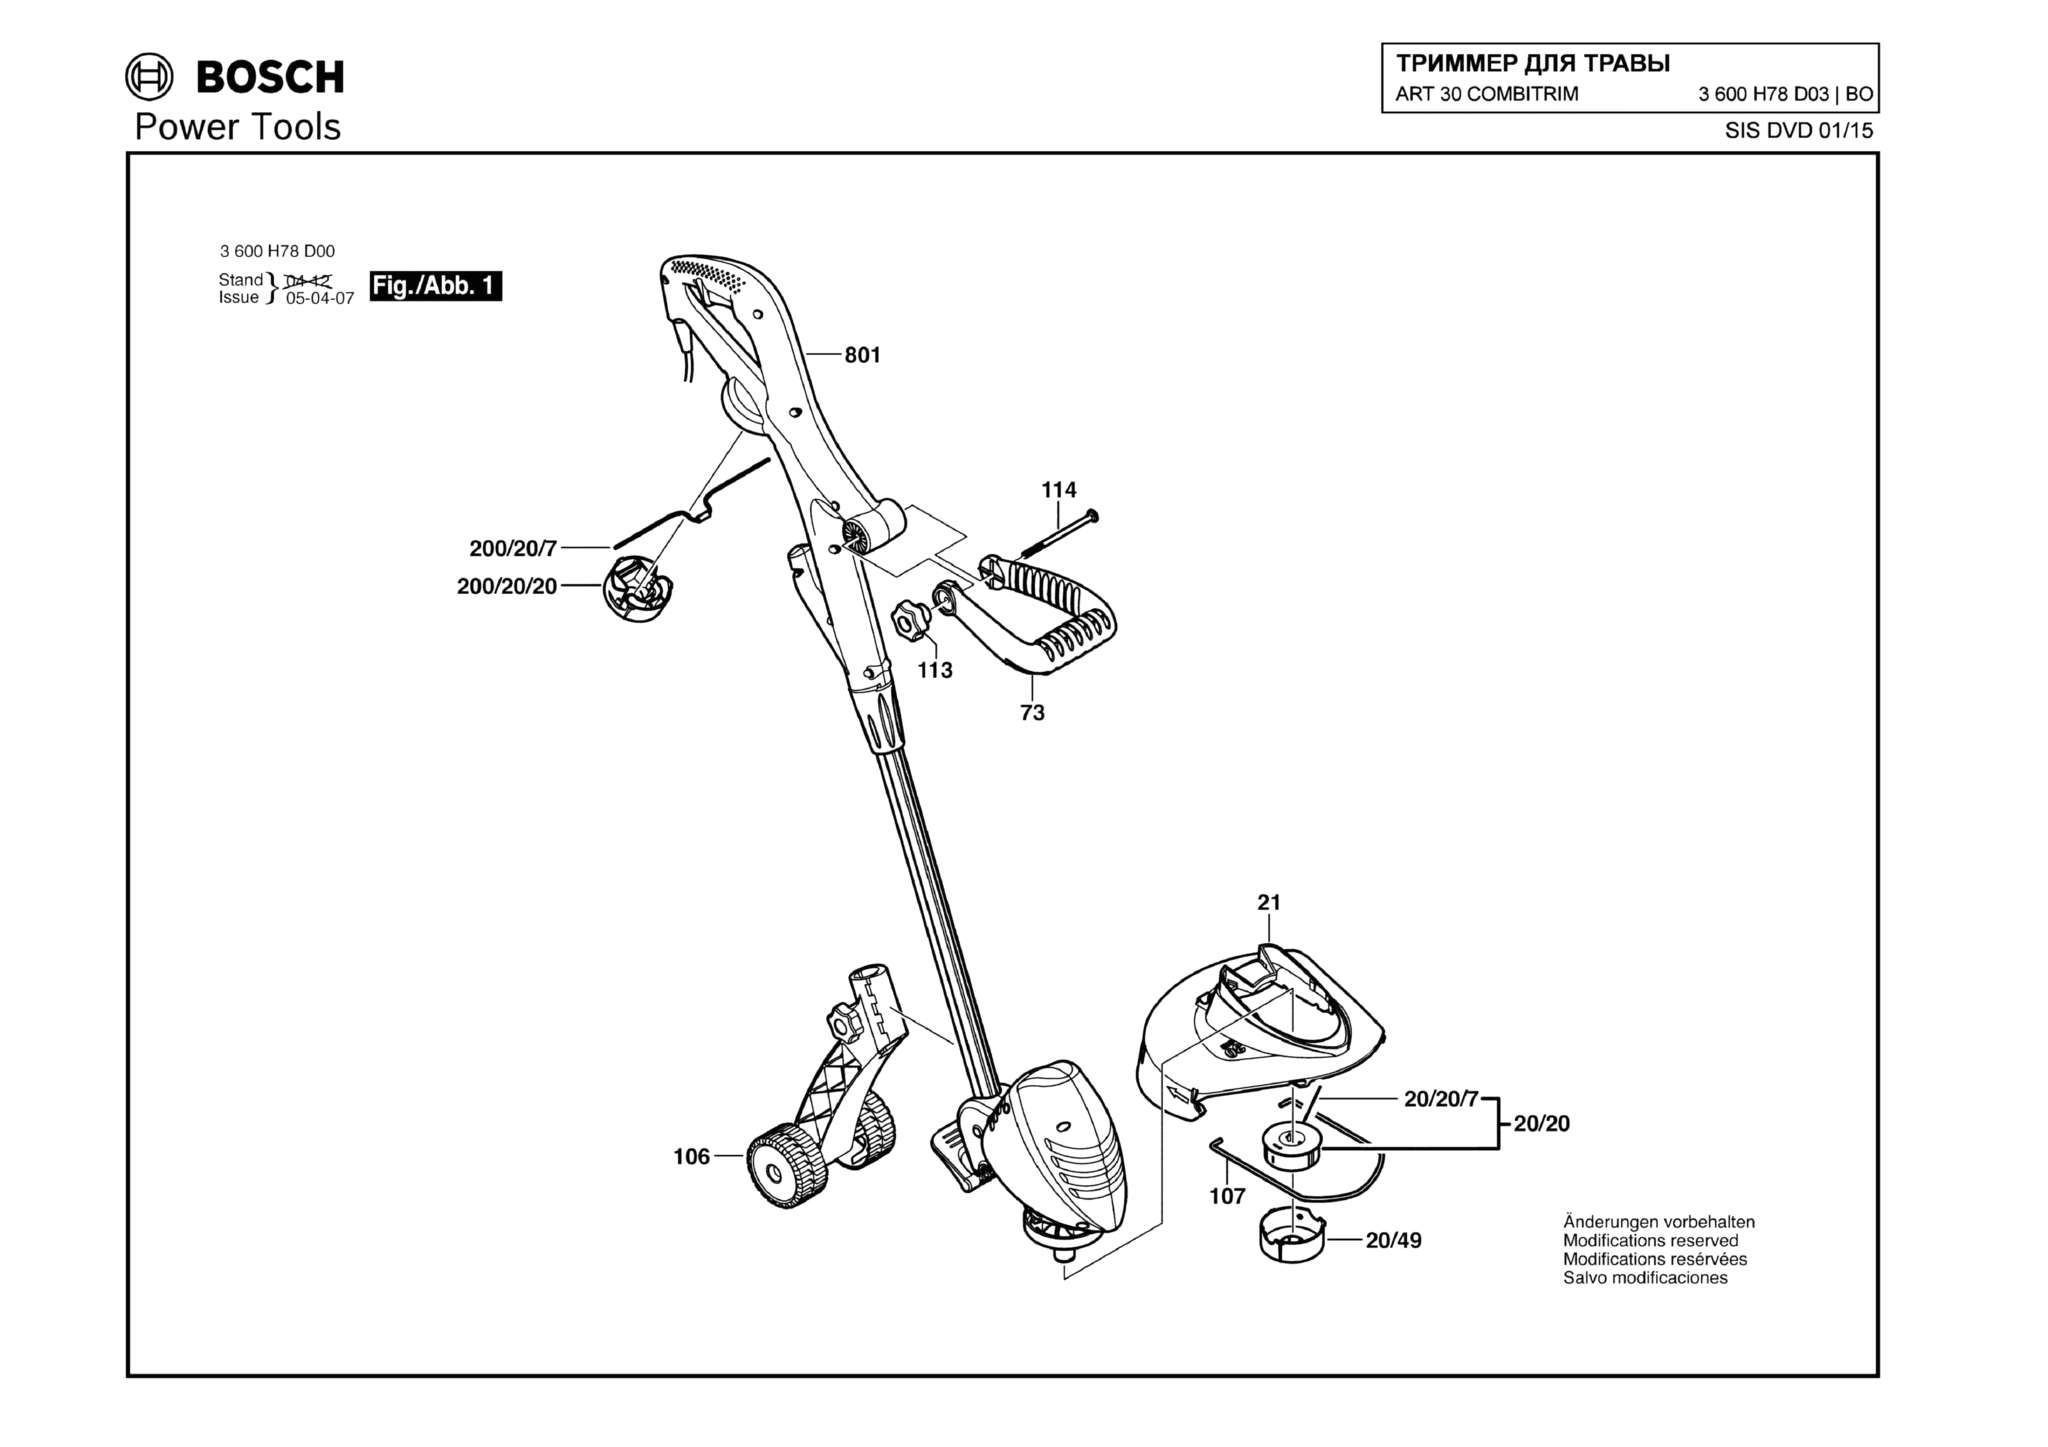 Запчасти, схема и деталировка Bosch ART 30 COMBITRIM (ТИП 3600H78D03)